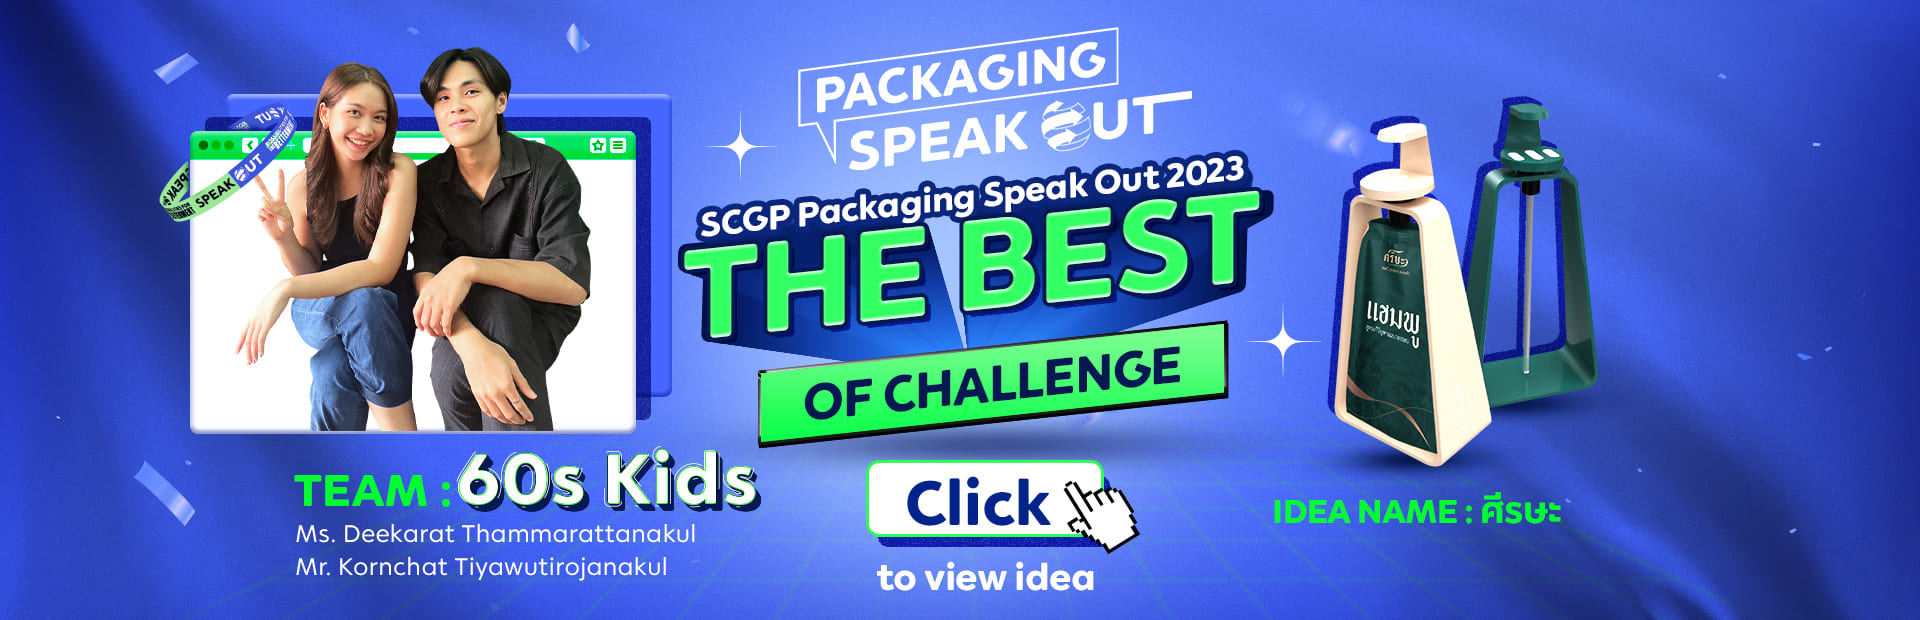 SCGP Packaging Speak Out 2022